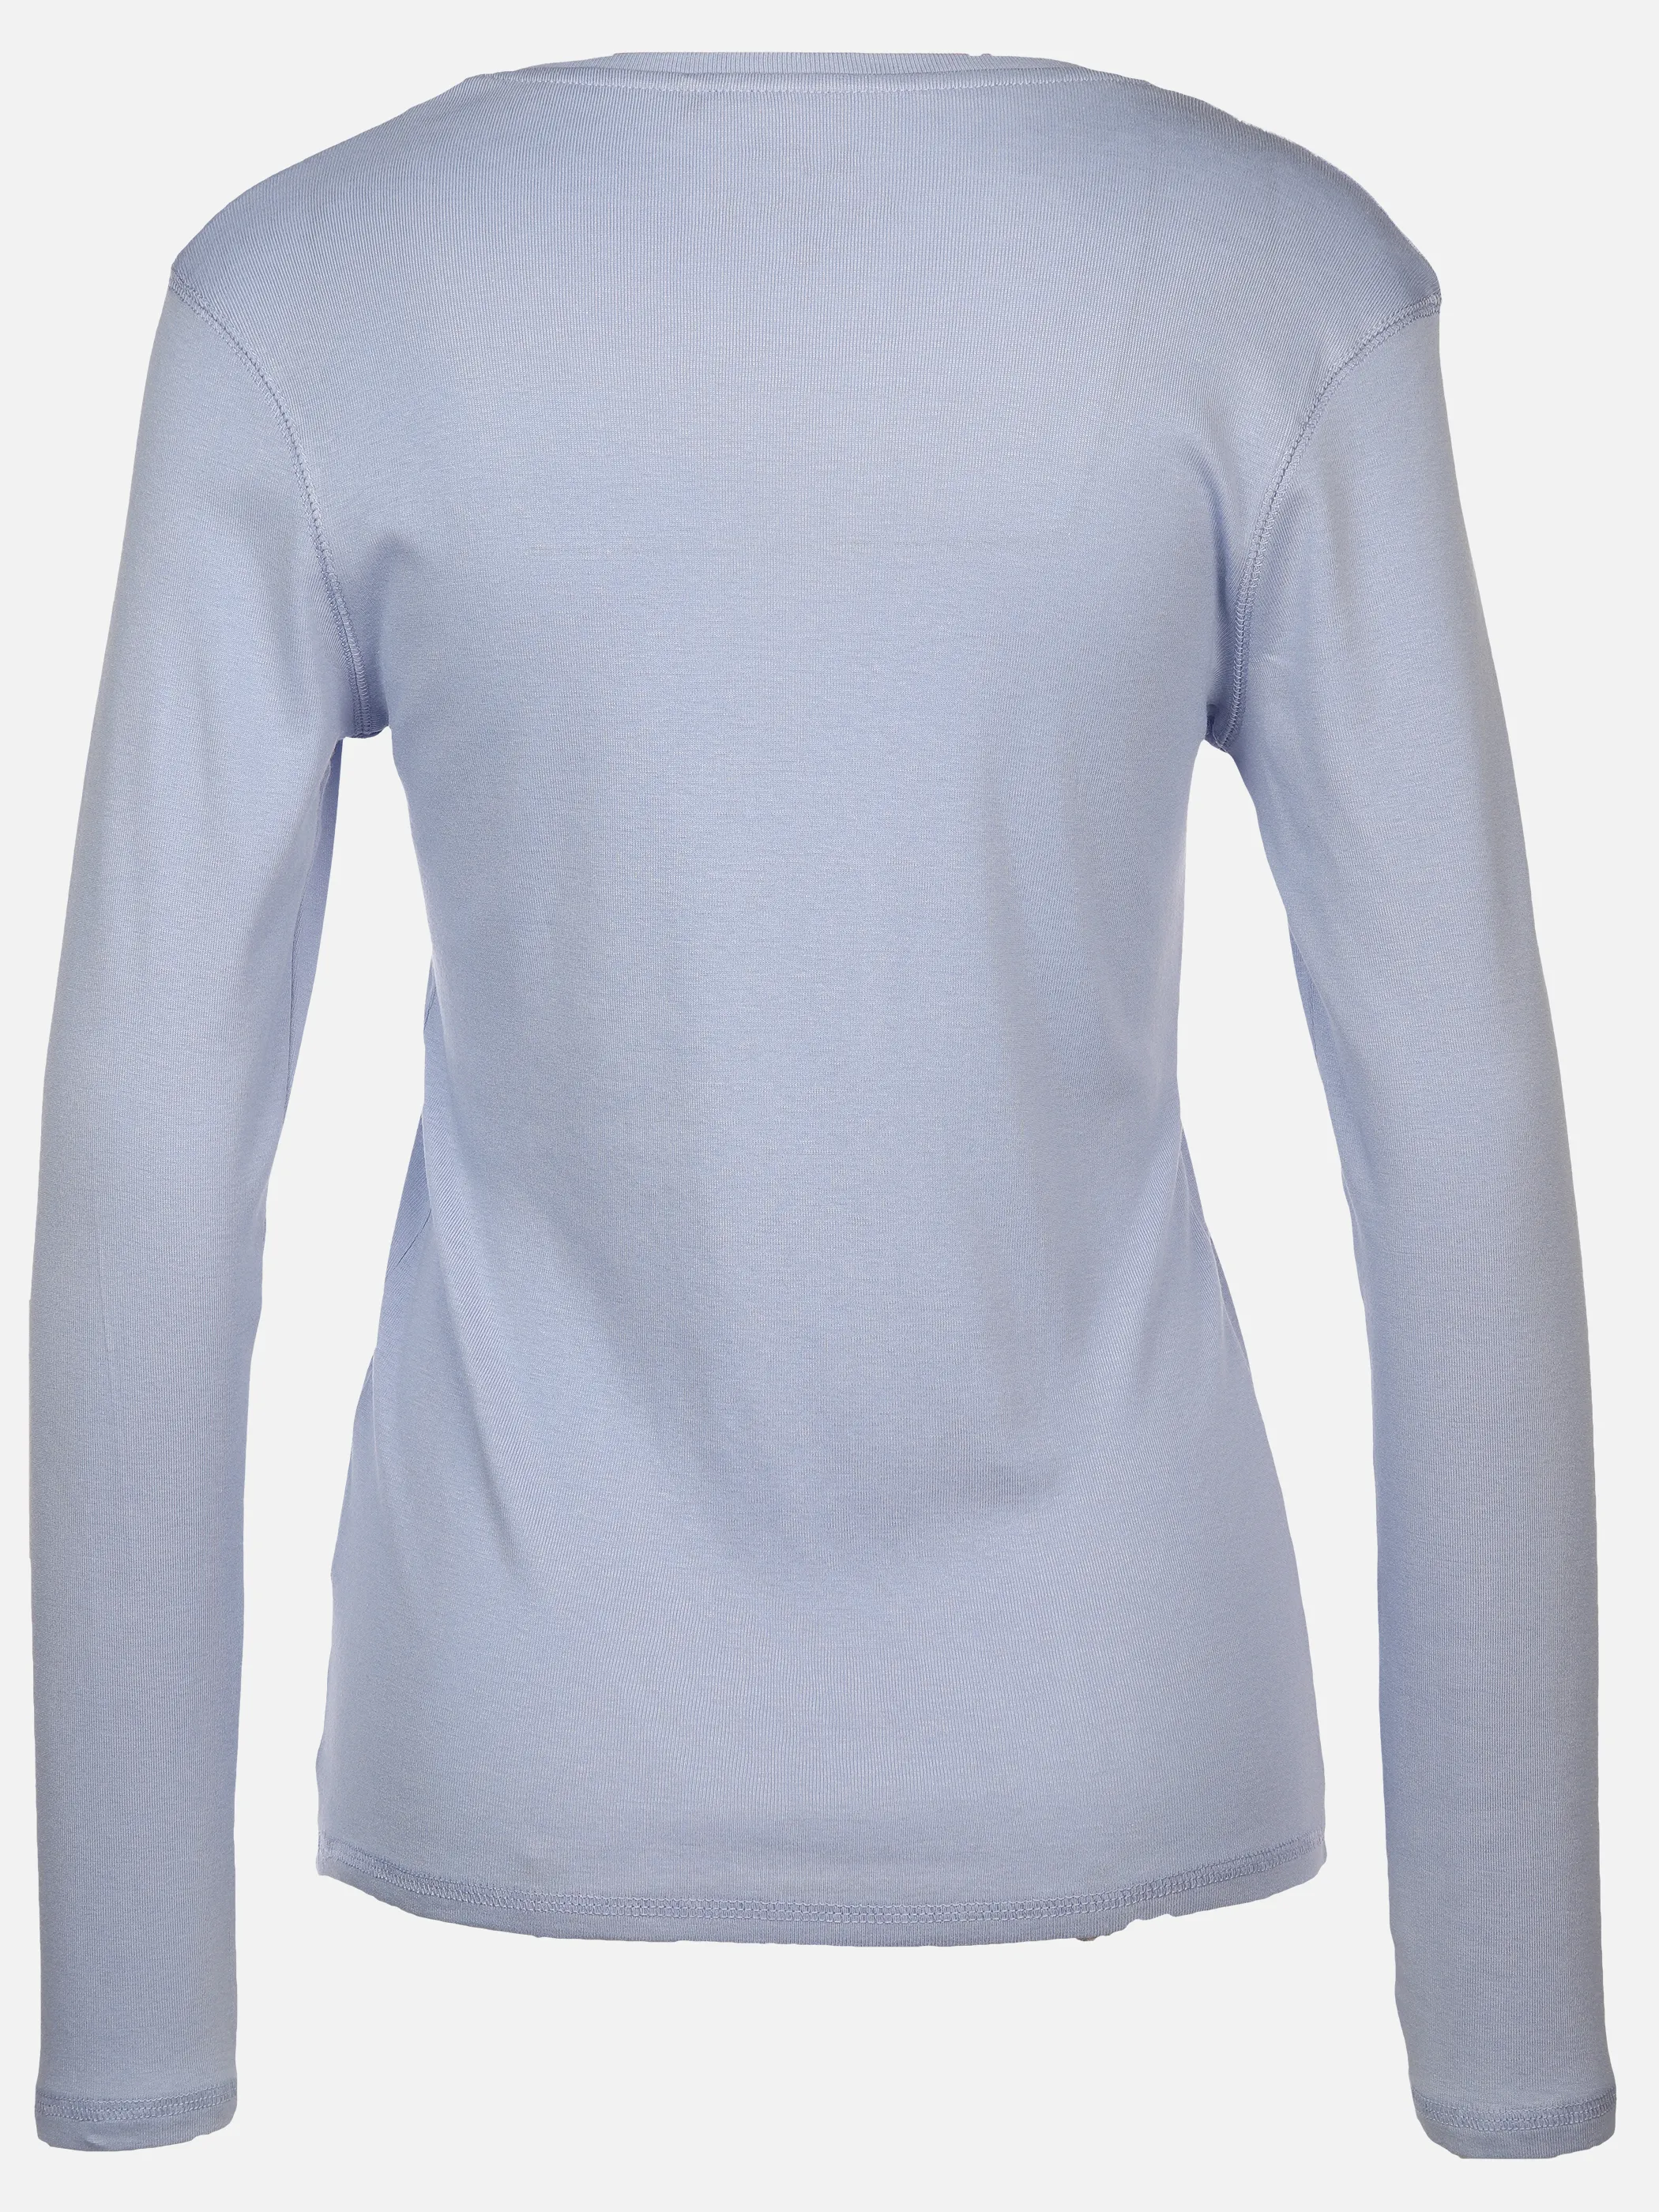 Sure Da-Basic-Shirt langarm Blau 897614 JEANSBLAU 2